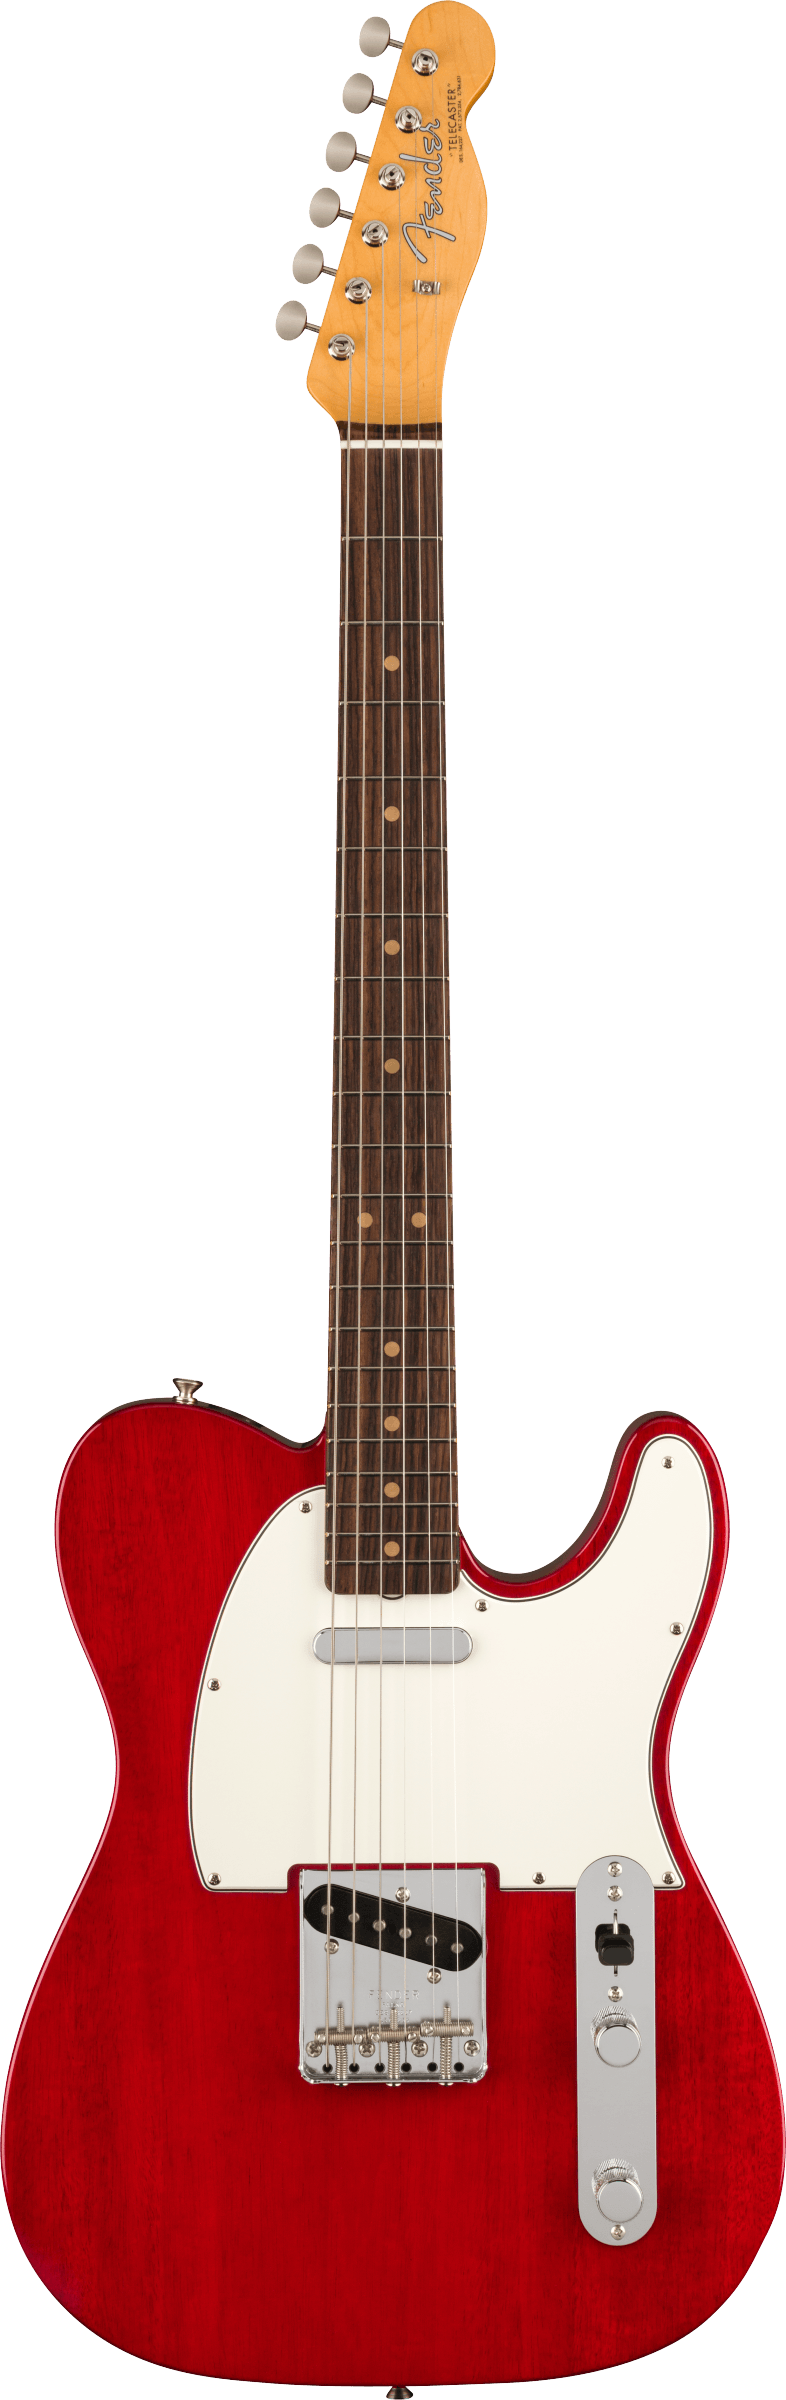 Fender American Vintage II 1963 Telecaster®, Rosewood Fingerboard, Crimson Red Transparent